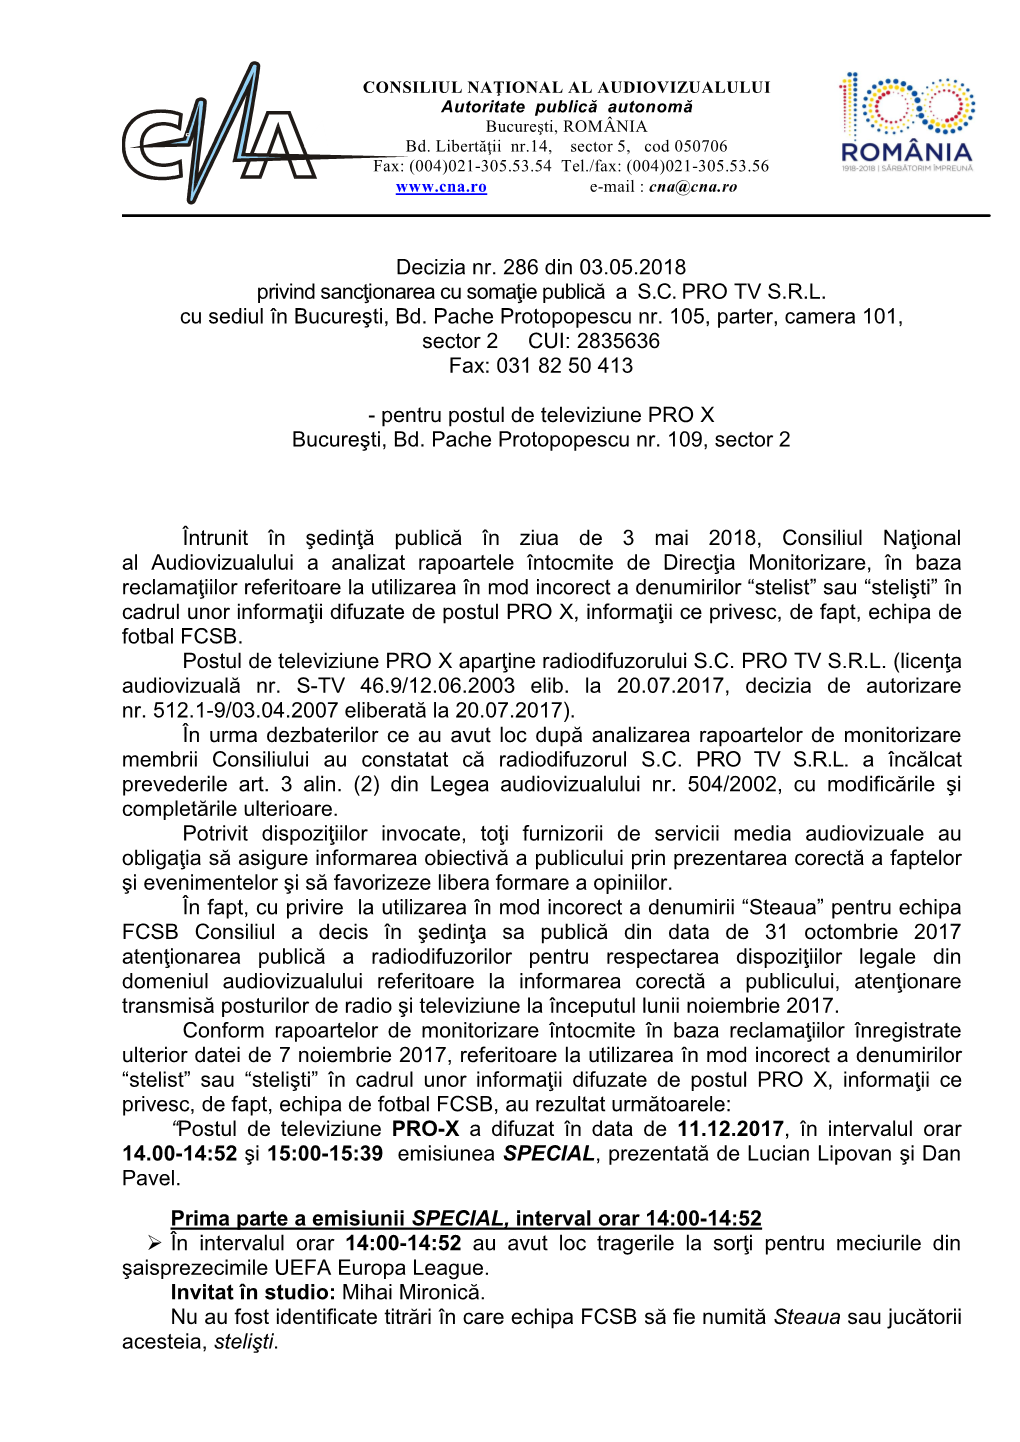 Decizia Nr. 286 Din 03.05.2018 Privind Sancţionarea Cu Somaţie Publică a S.C